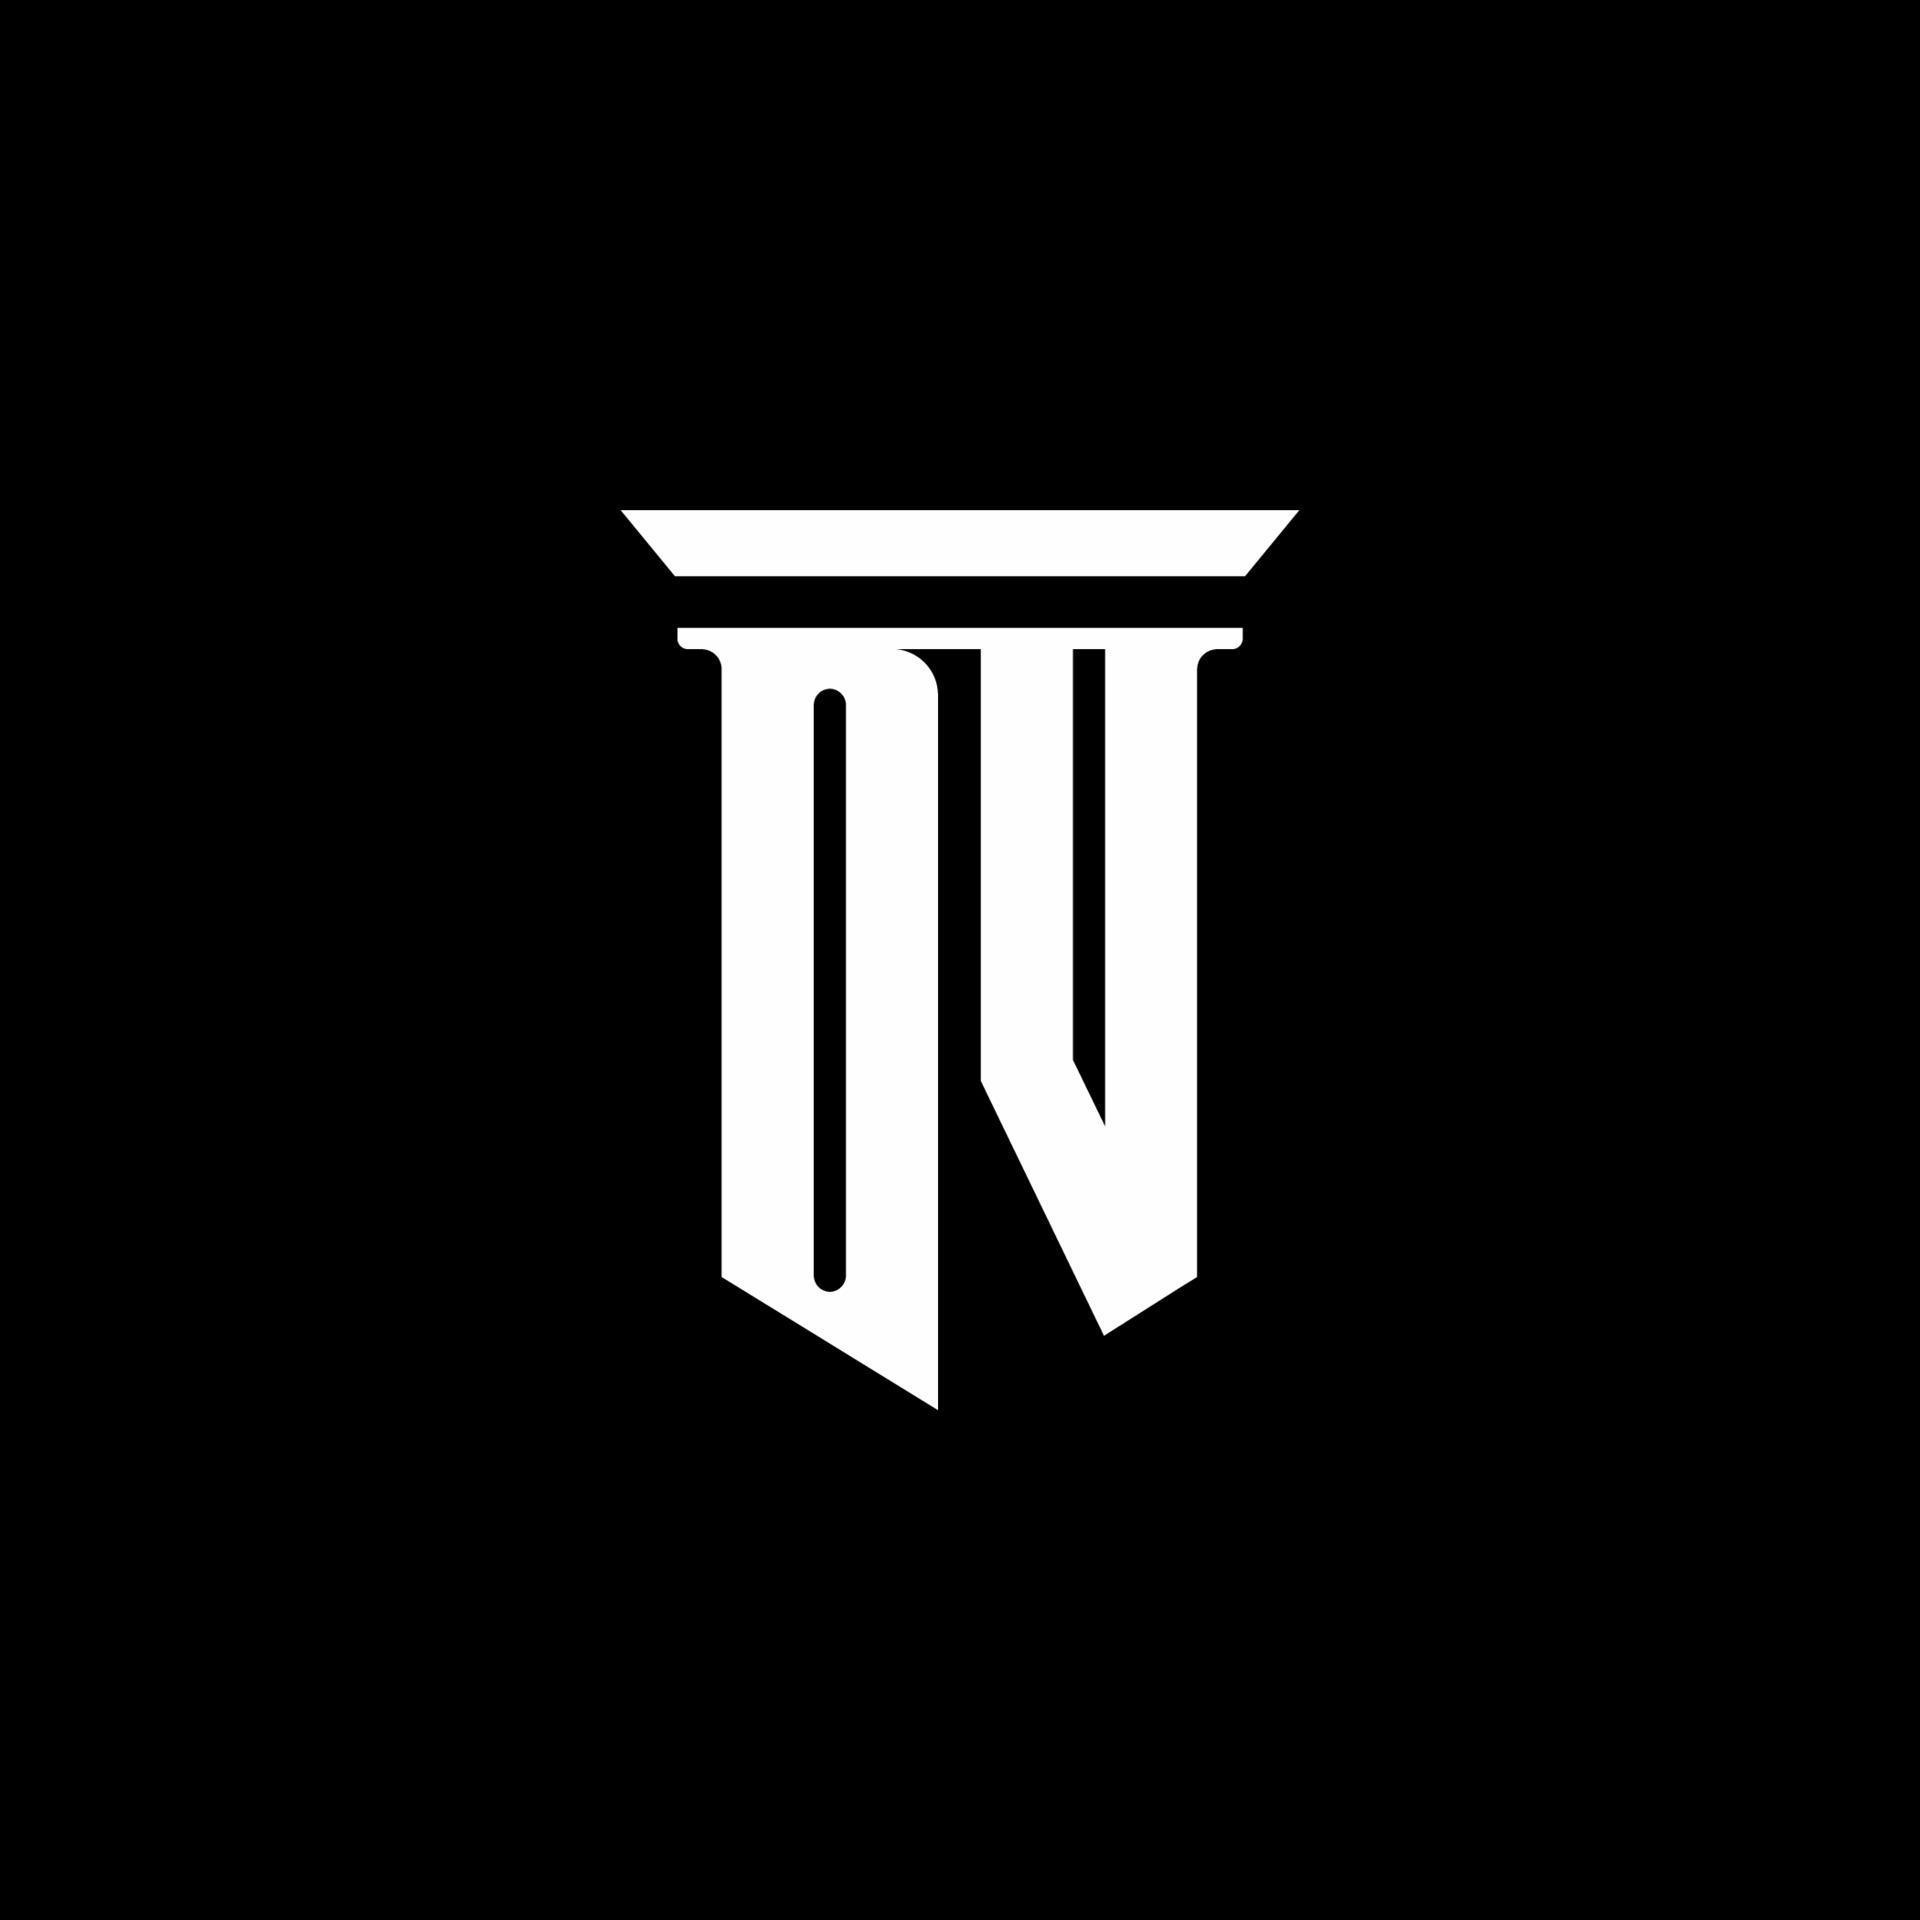 DV monogram logo with emblem style isolated on black background 3651221